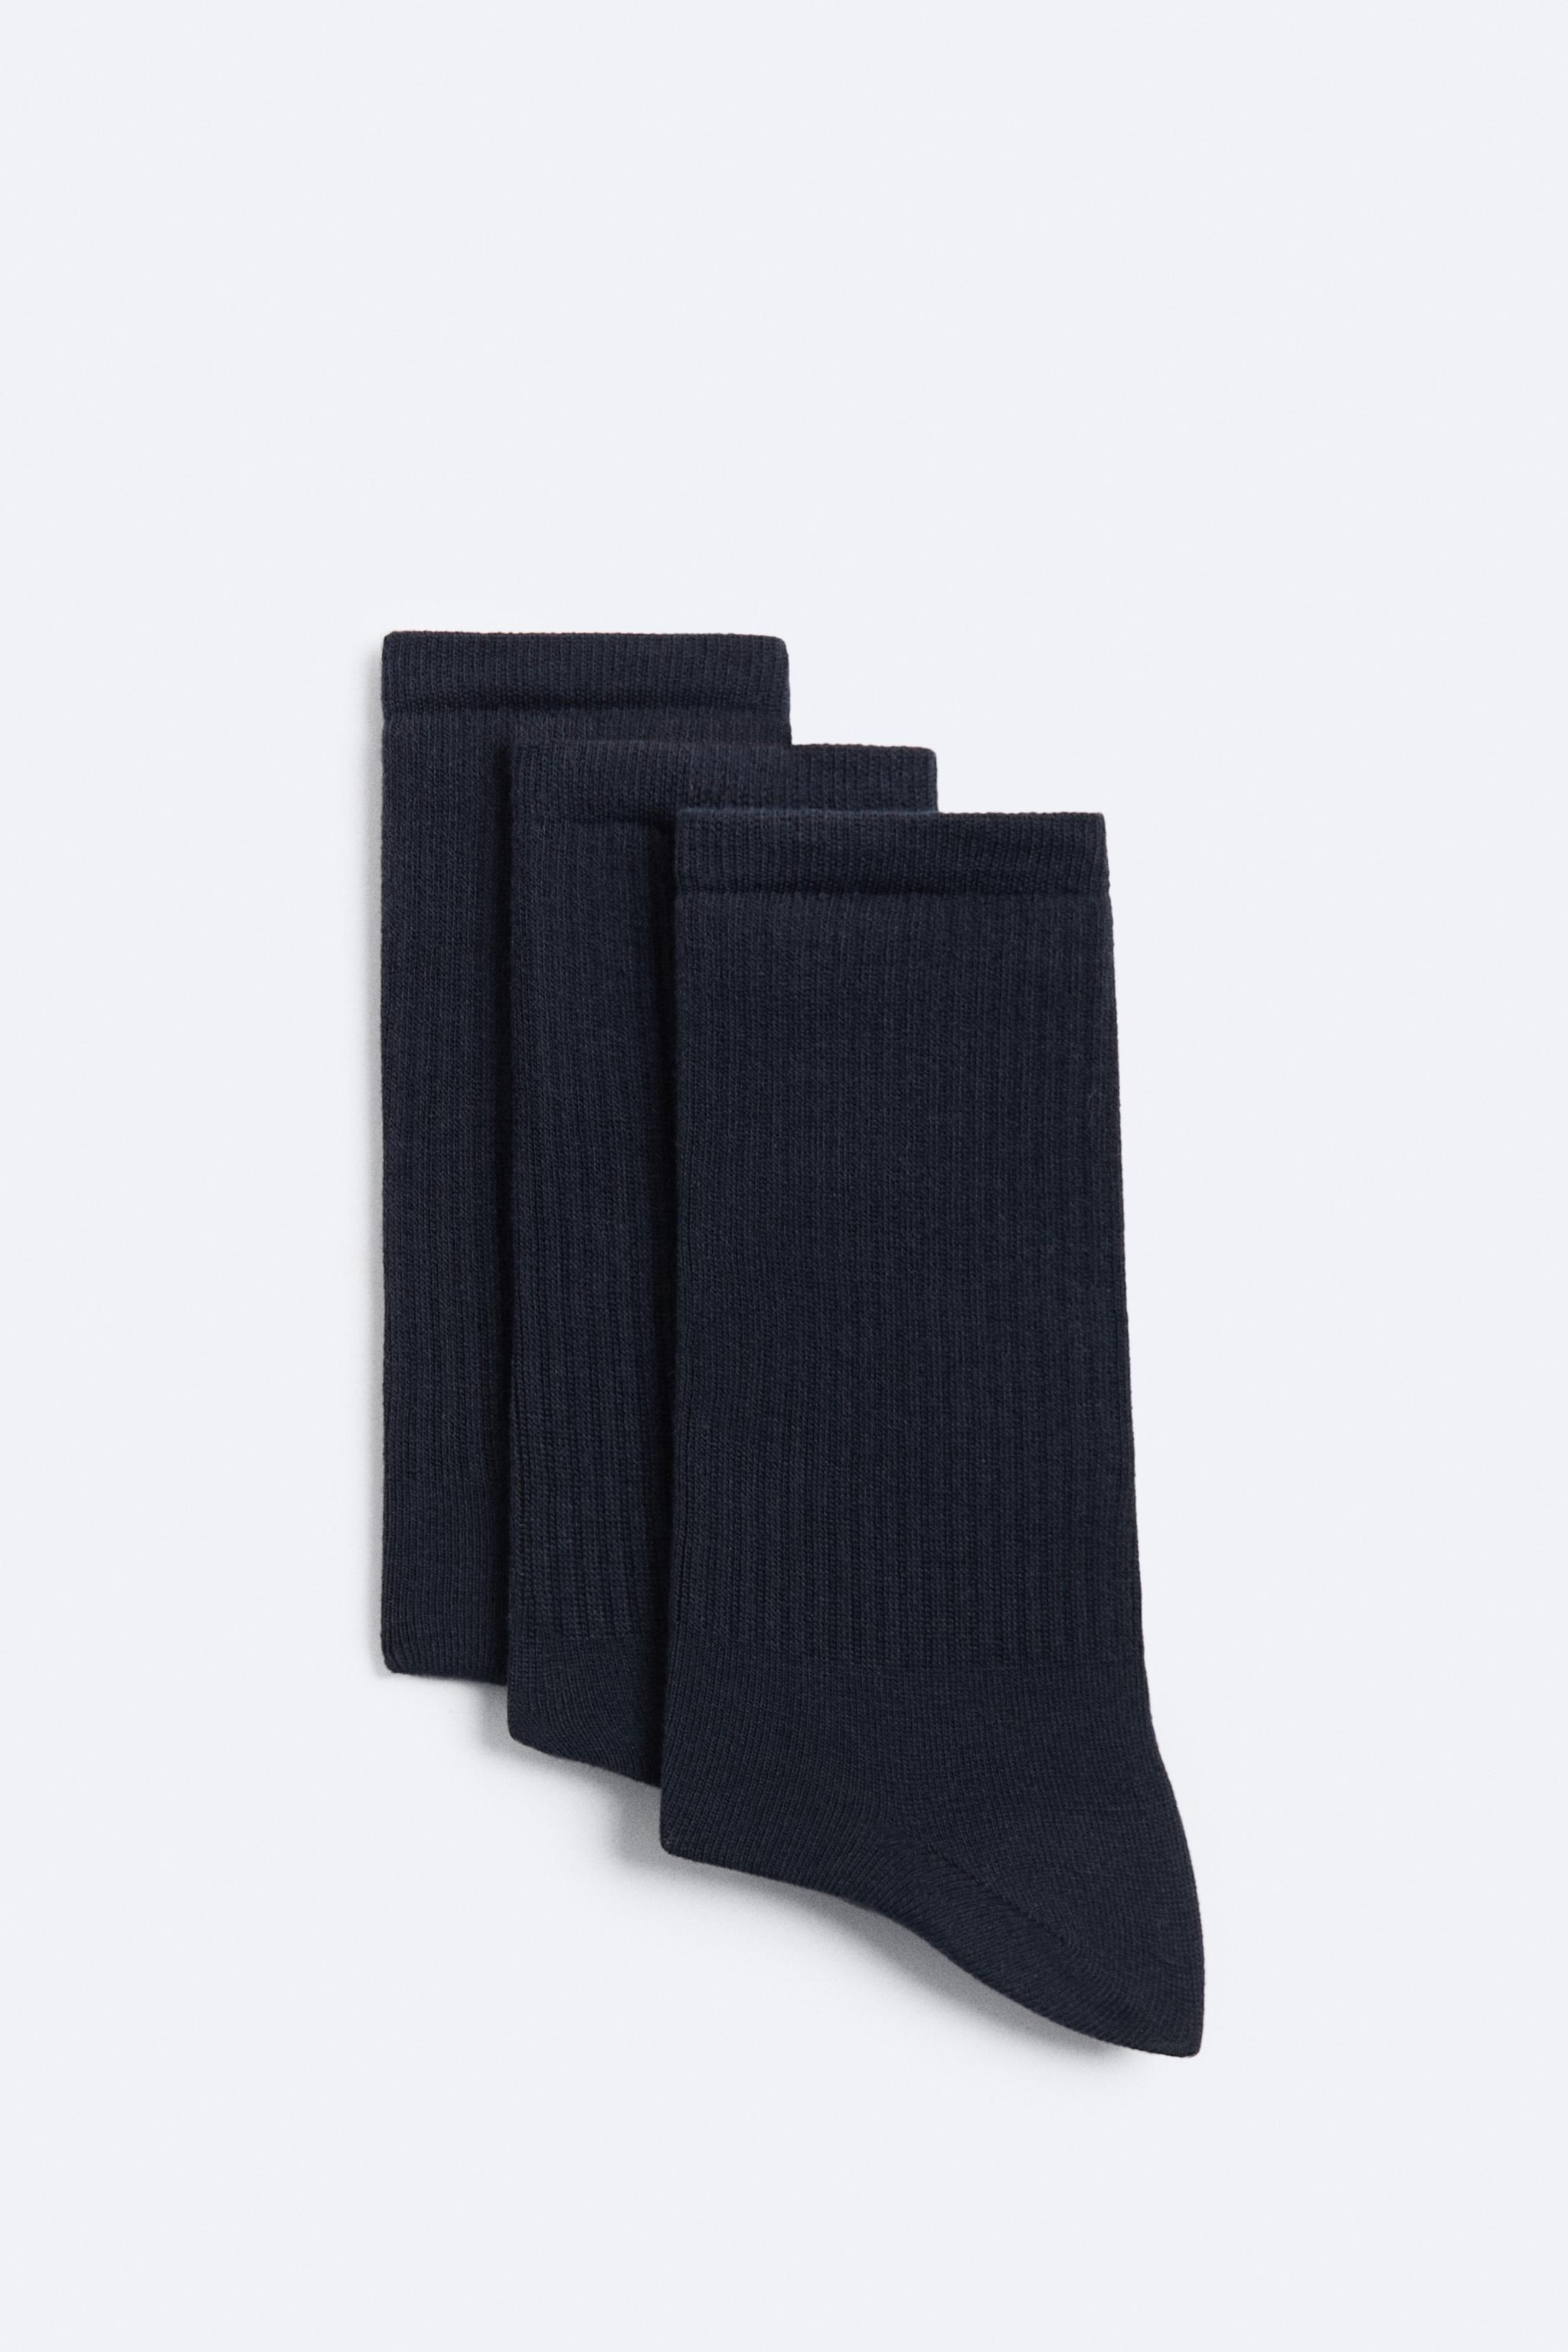 Pack de 5 calcetines largos combinados - Calcetines - ACCESORIOS - Hombre 